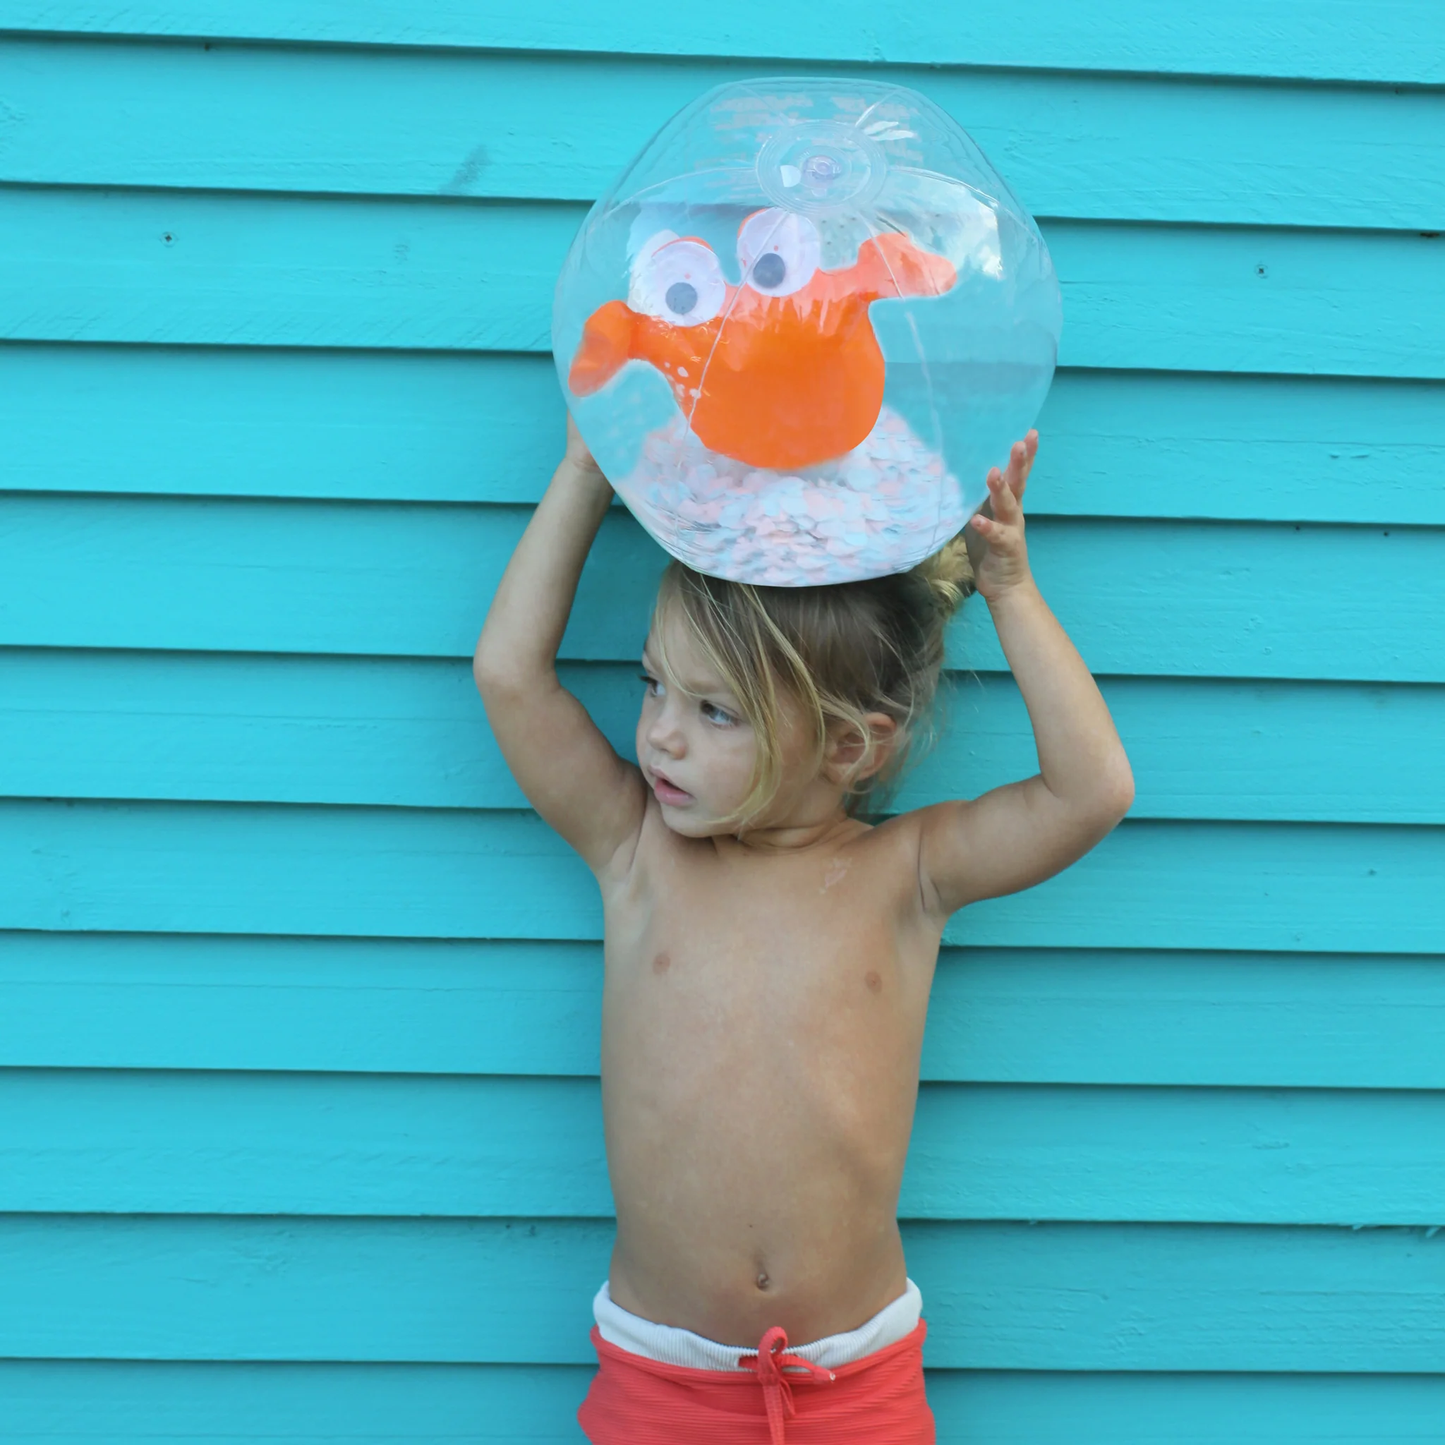 SUNNYLiFE 3D Inflatable Beach Ball Sonny the Sea Creature